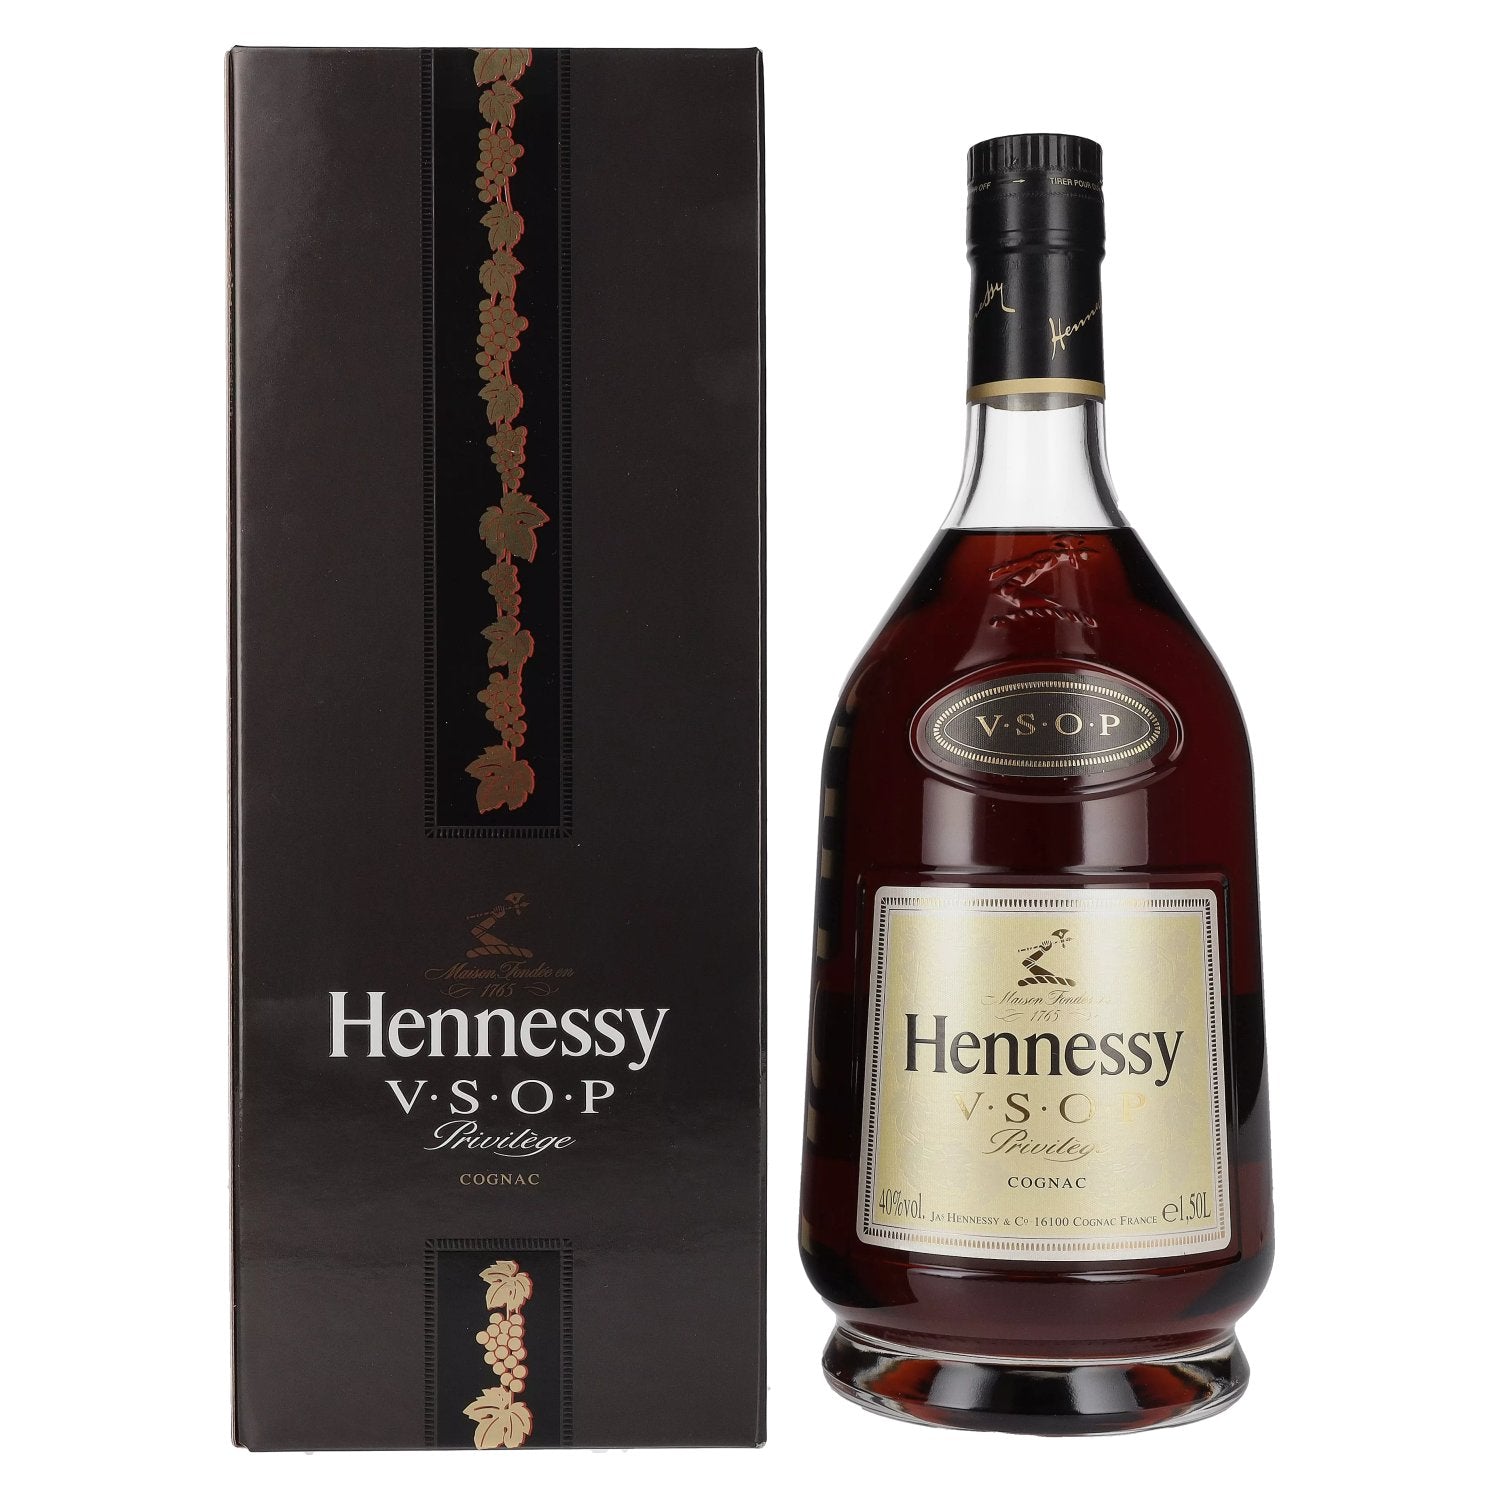 Hennessy V.S.O.P Privilege Cognac 40% Vol. 1,5l in Giftbox